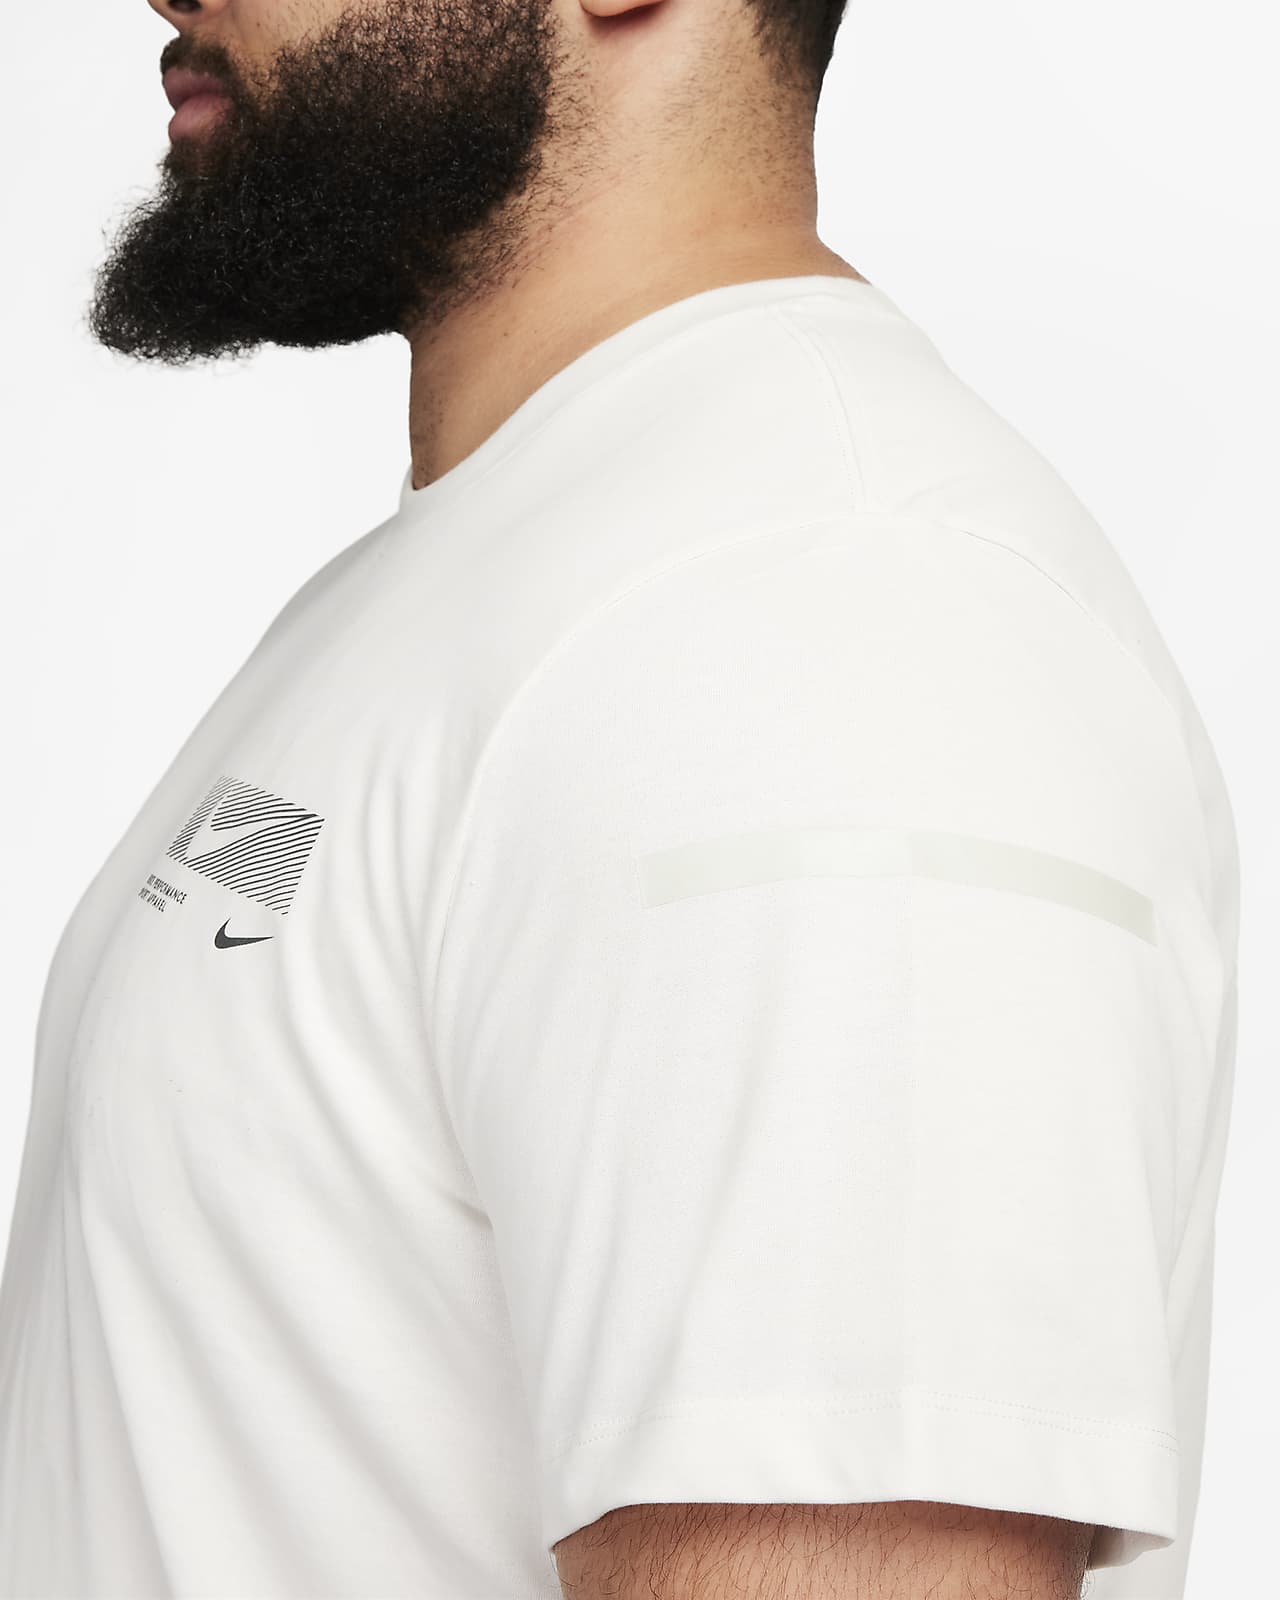 T-shirt de fitness Nike Dri-FIT pour homme. Nike FR